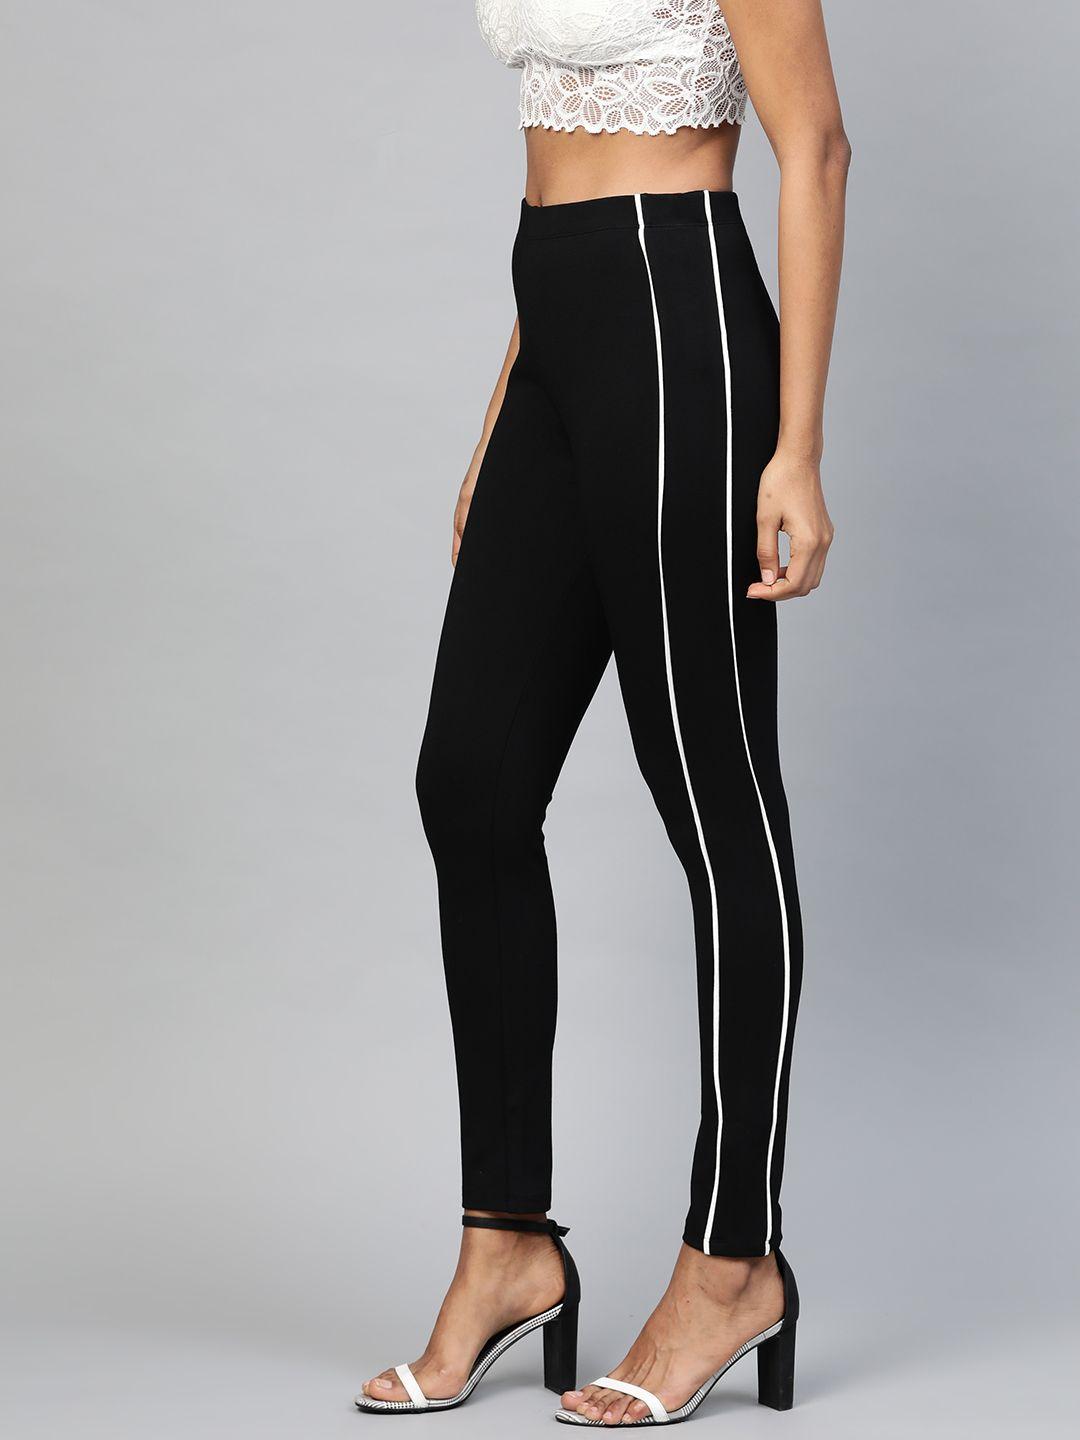 sassafras women black & white slim fit solid side stripe treggings